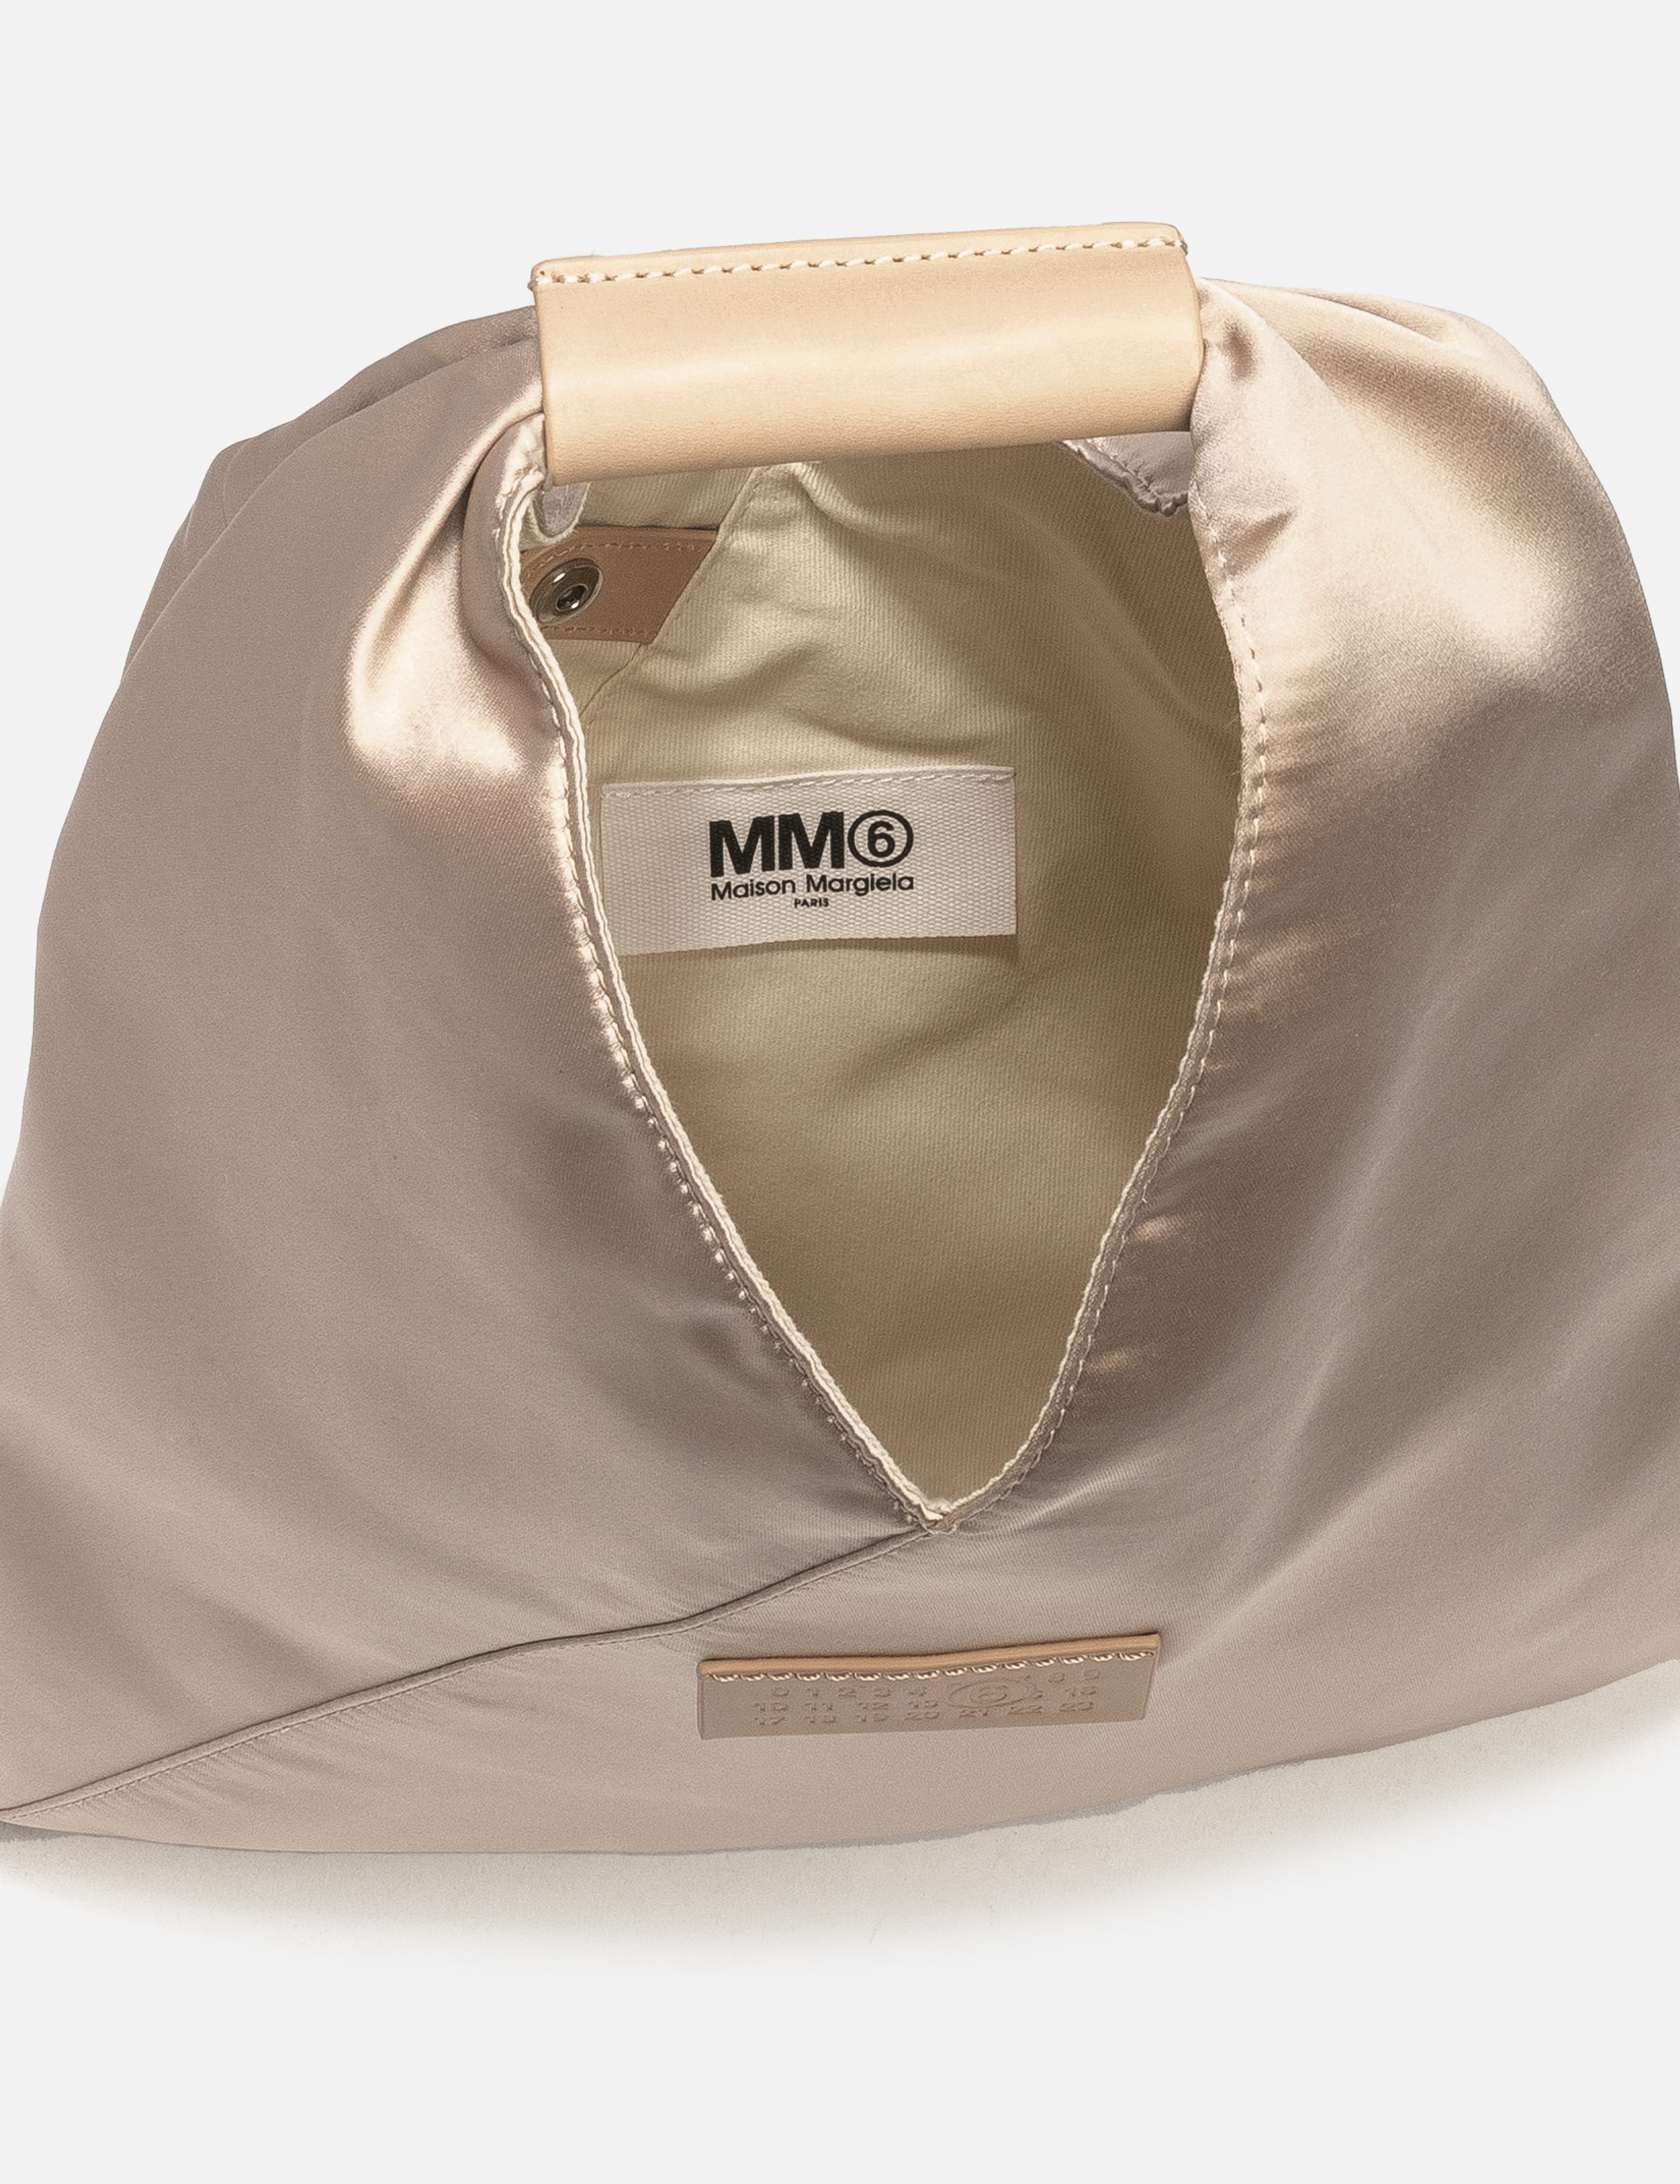 MM6 Maison Margiela - サテン「ジャパニーズ」 バッグ スモール | HBX 